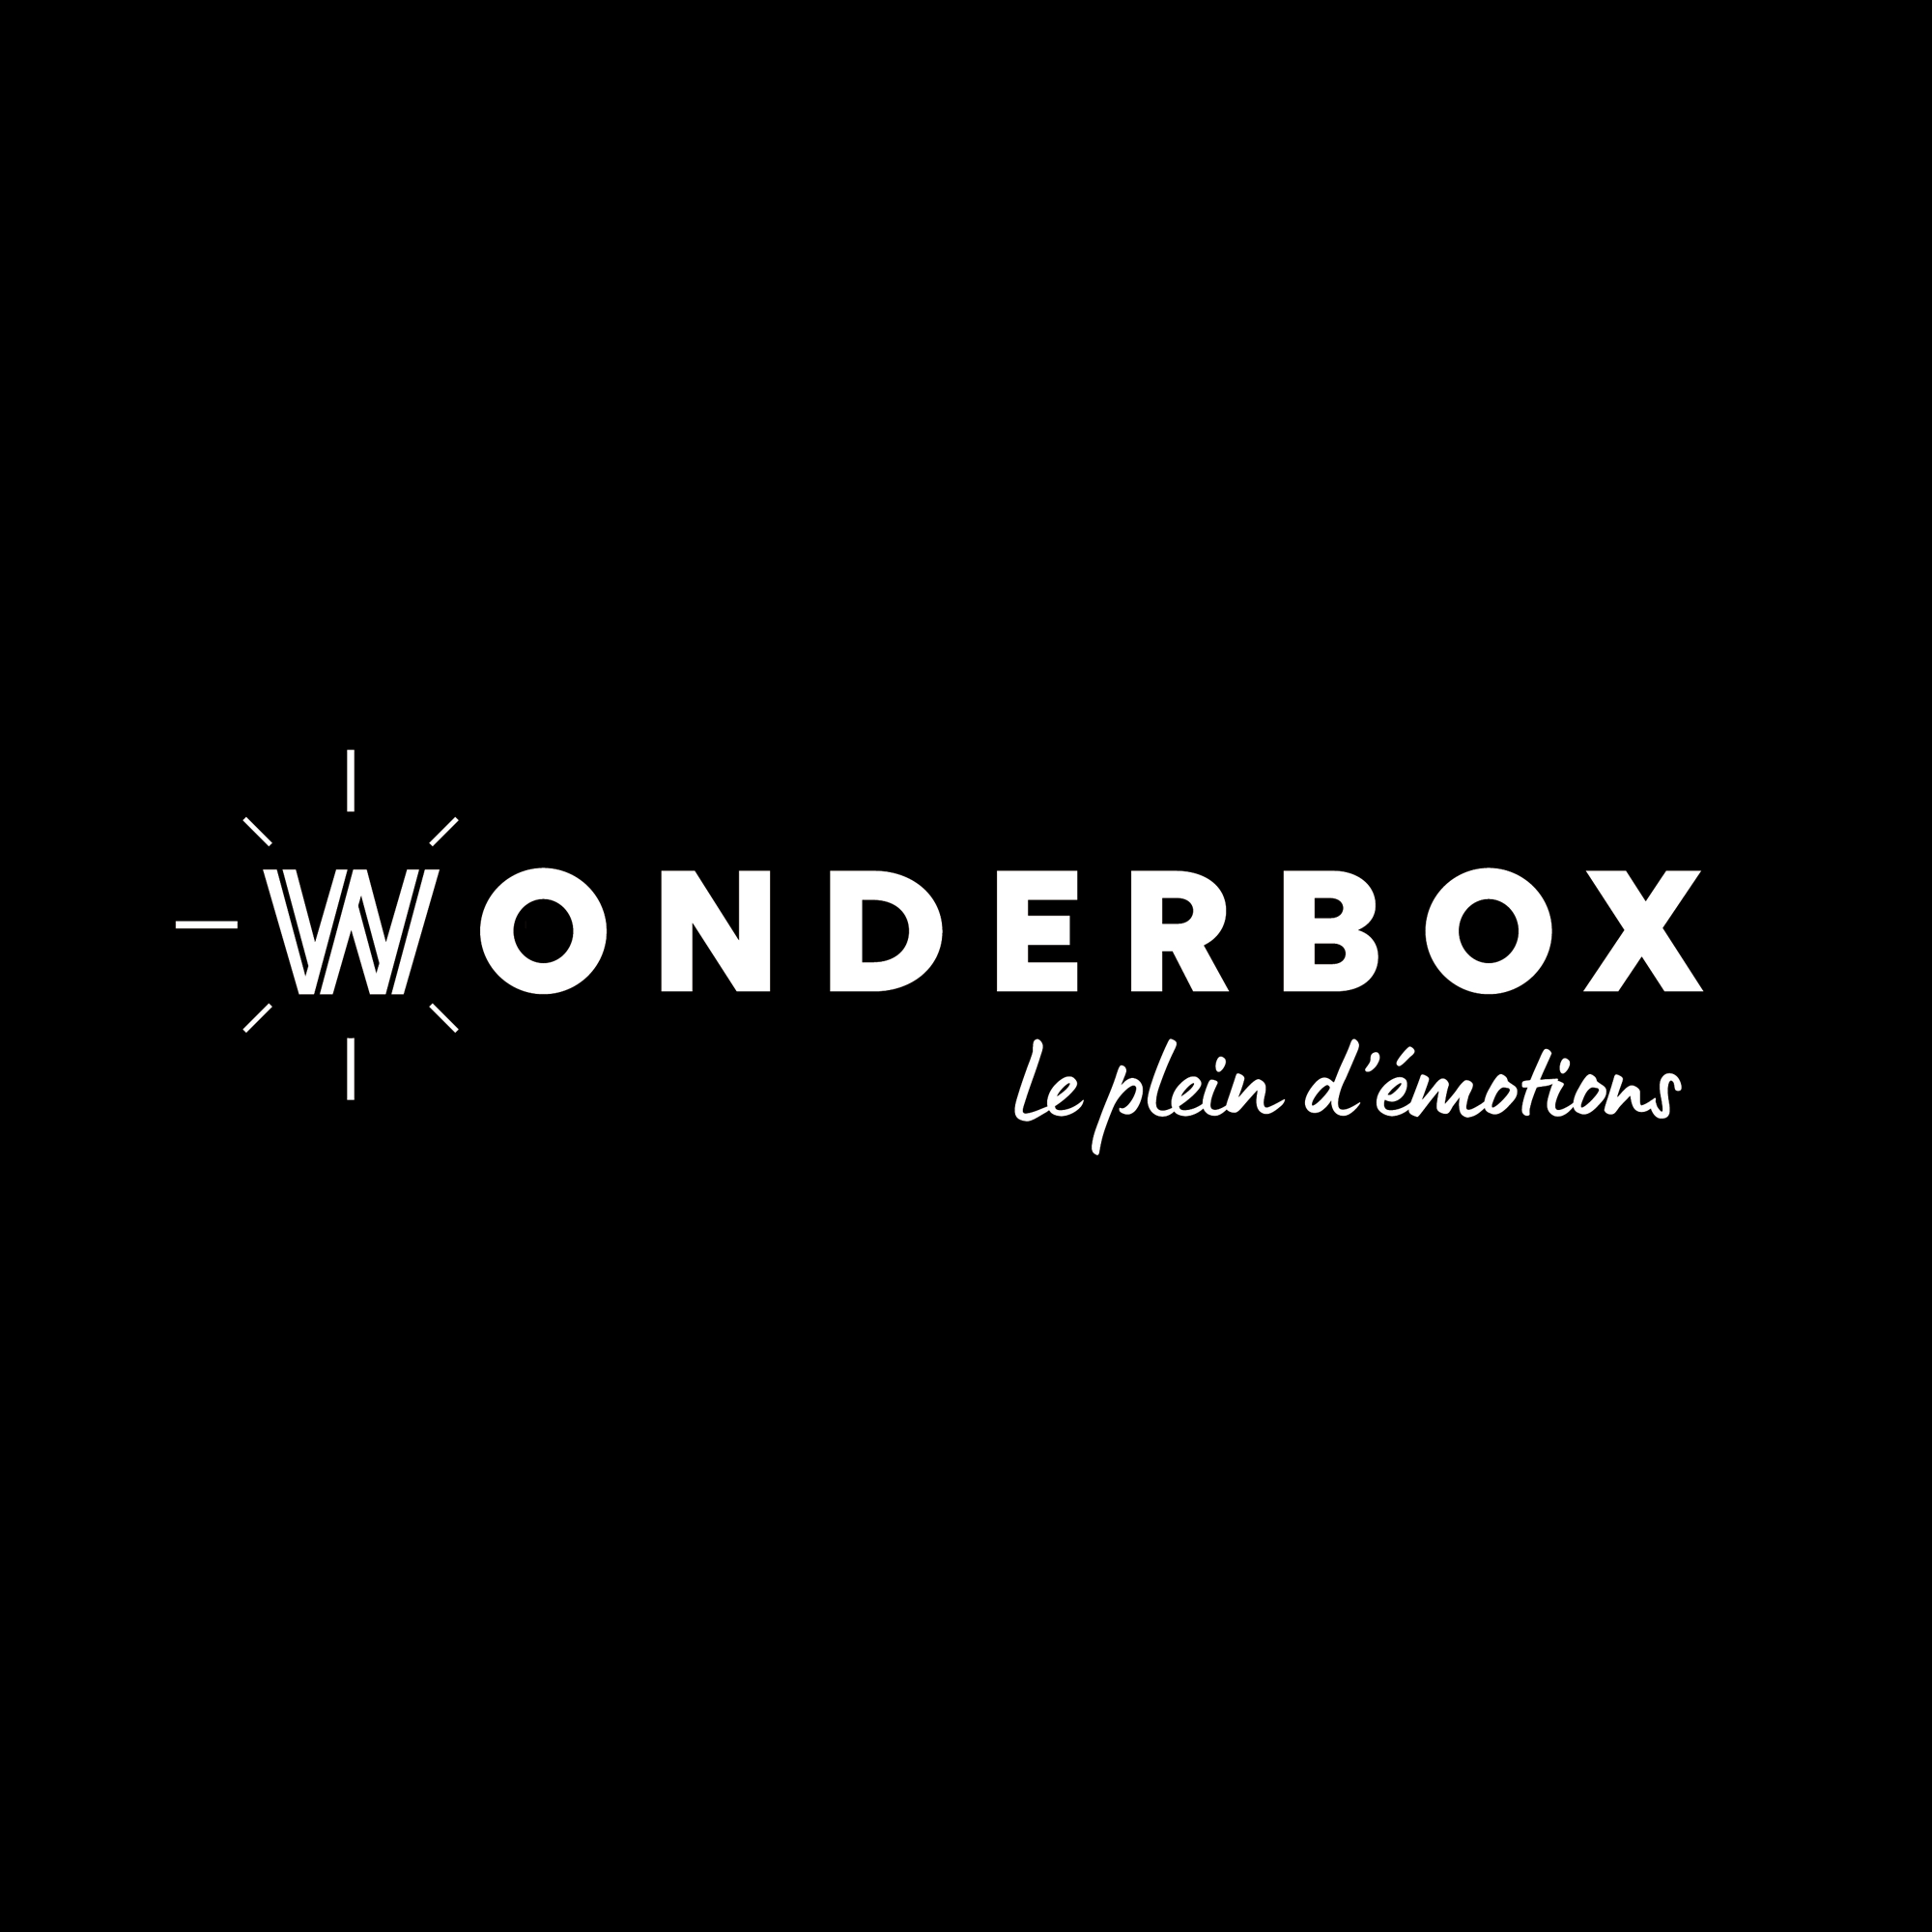 Illustration wonderbox